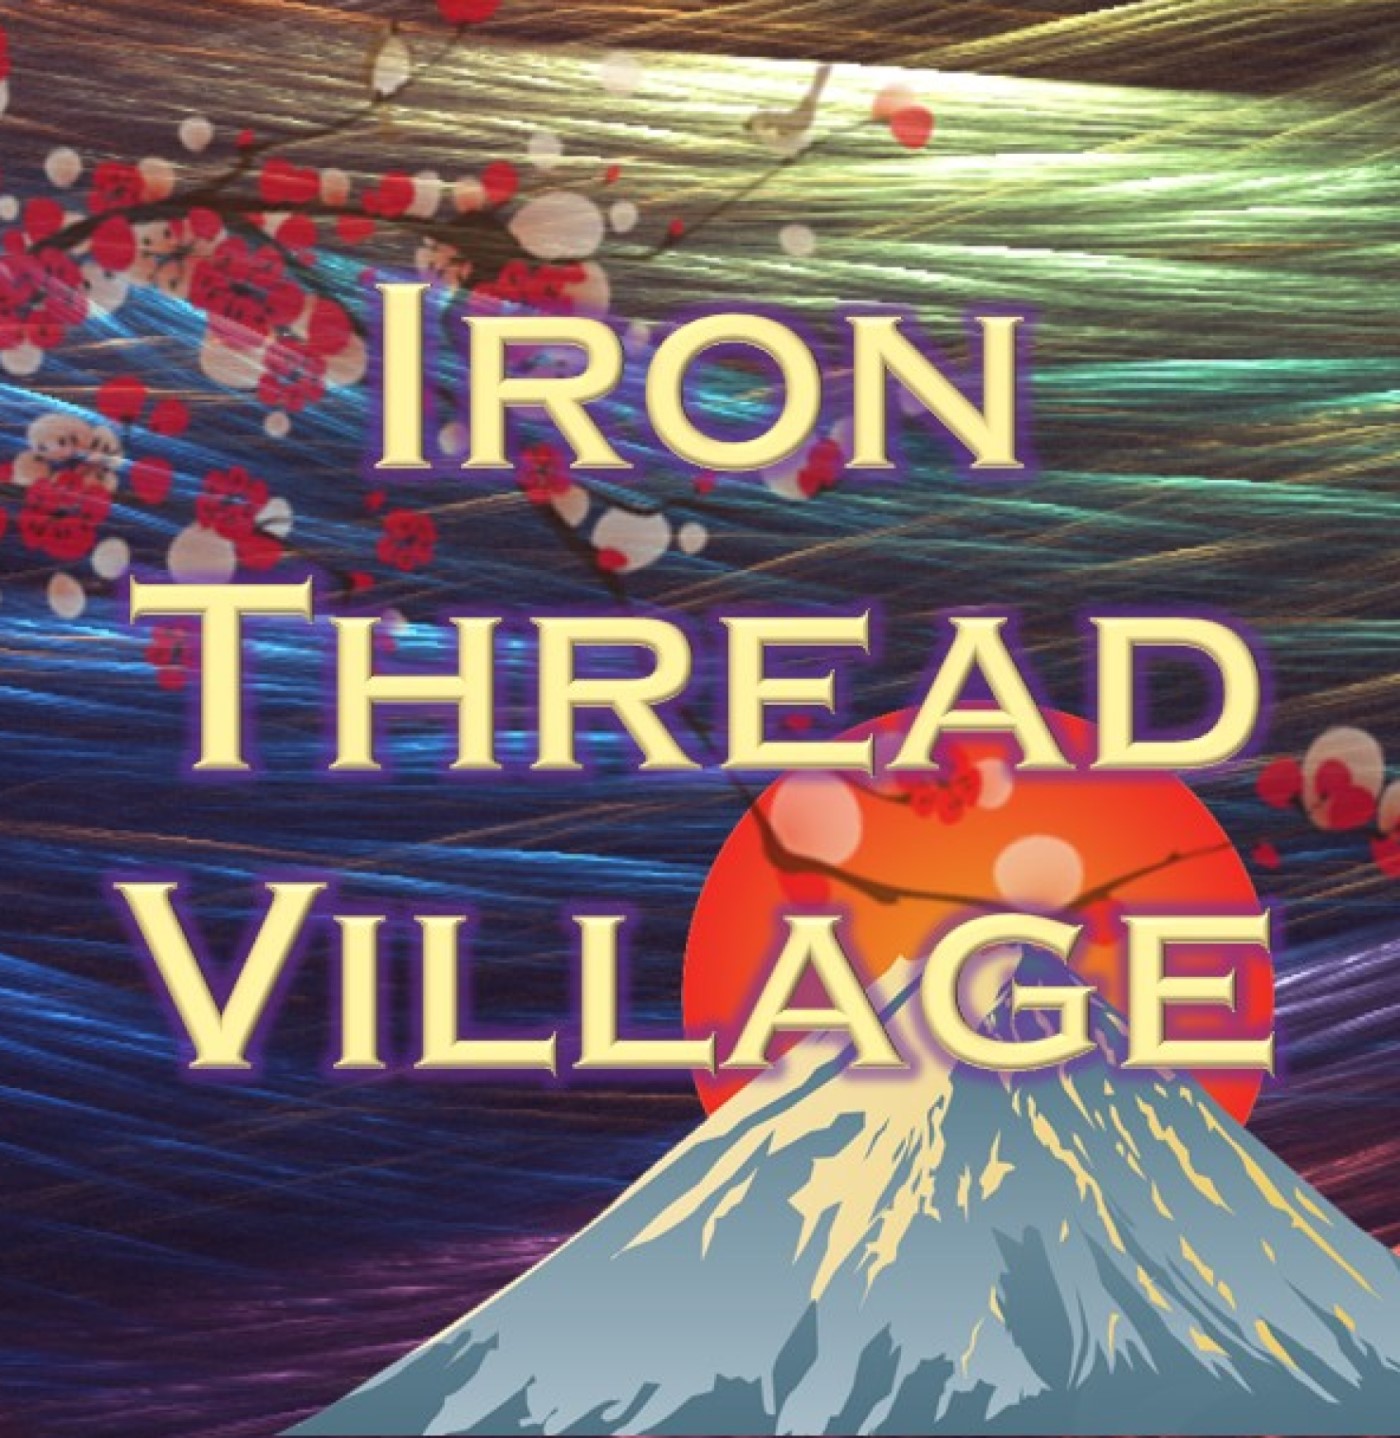 Iron Thread Village